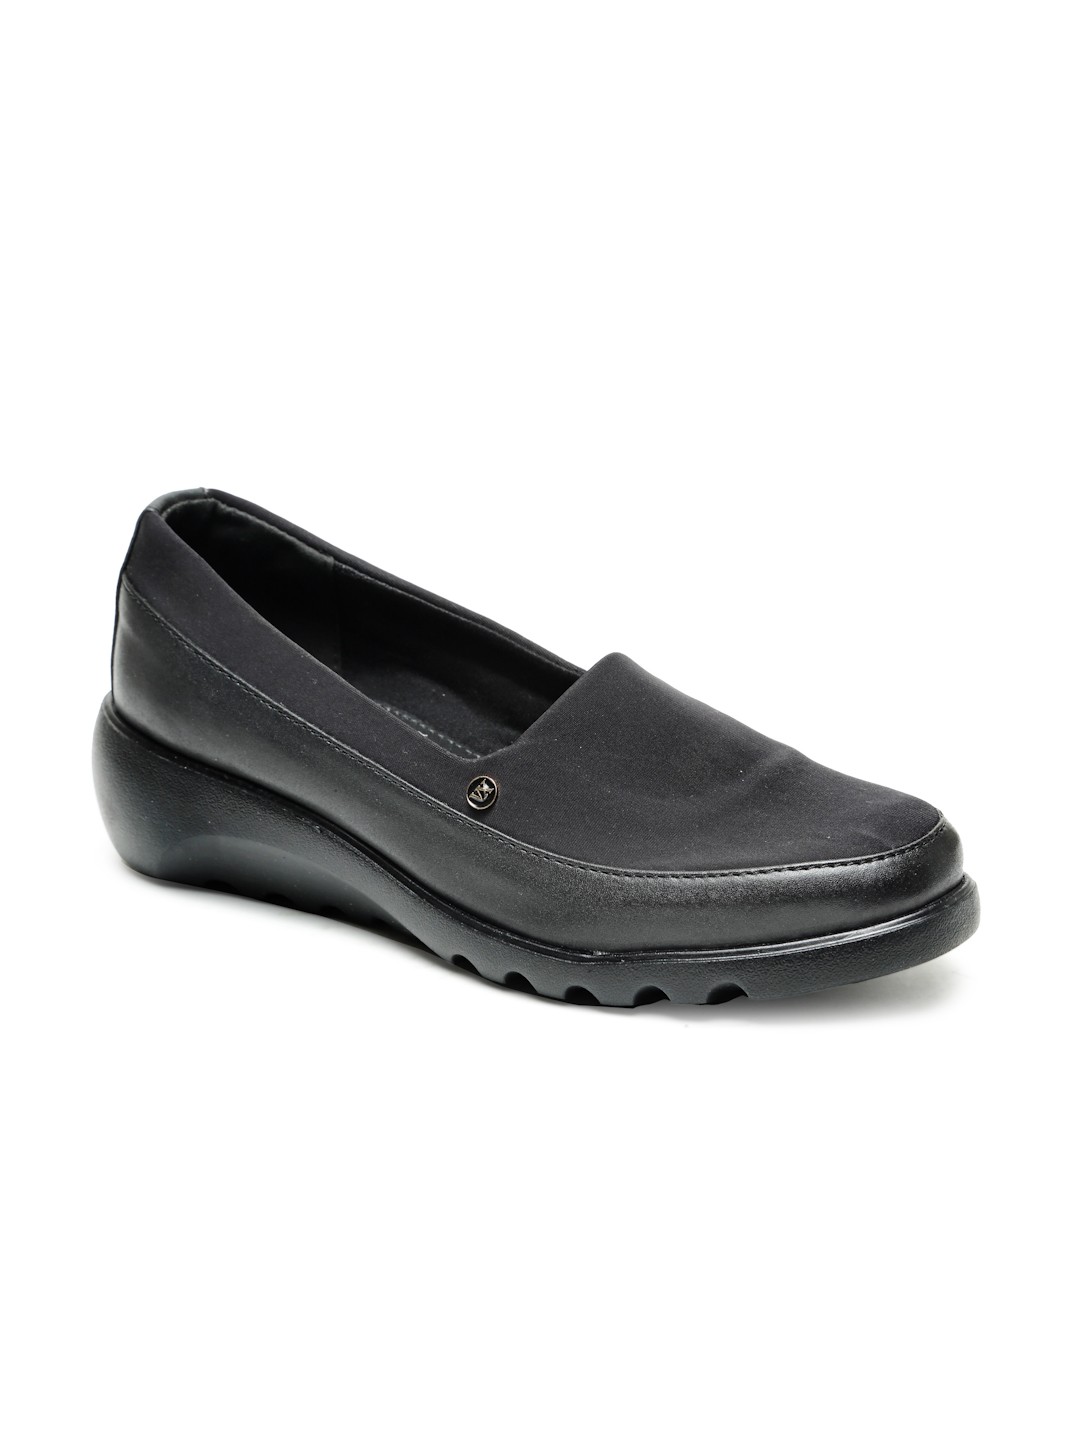 Buy Von Wellx Germany Comfort Women's Black Casual Shoes Elsa Online in West Bengal